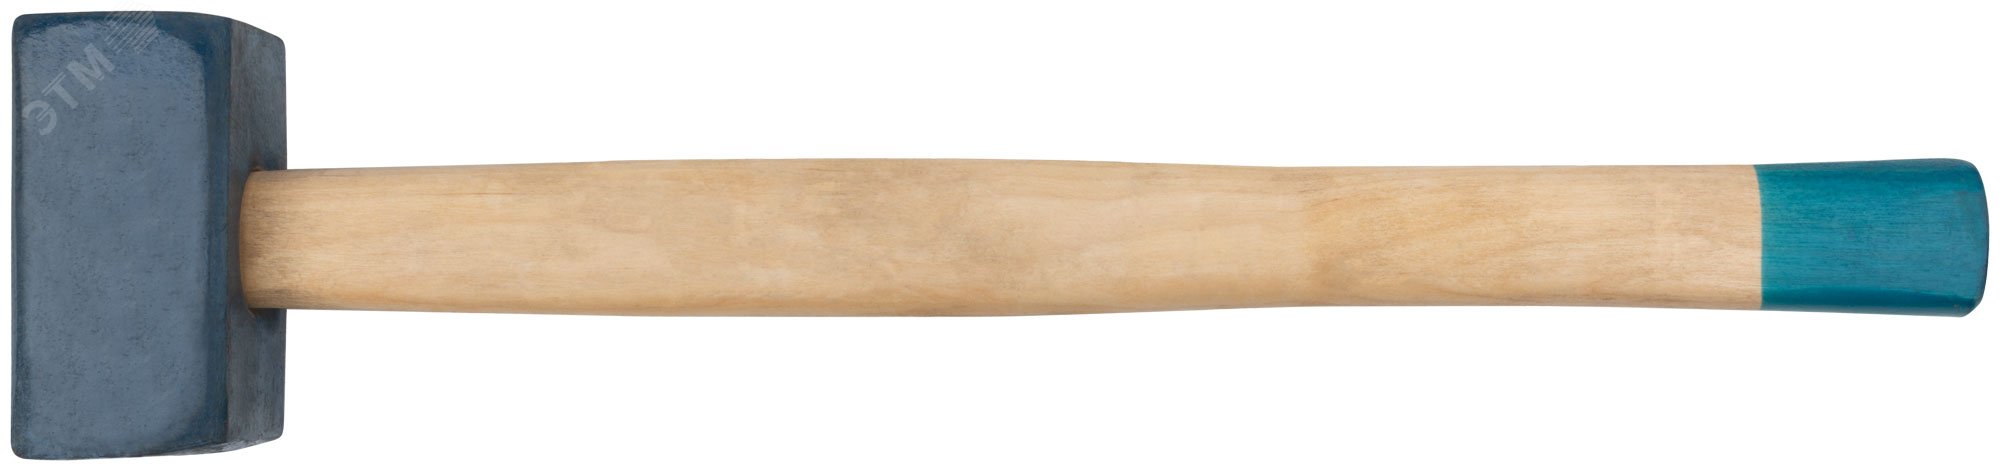 Кувалда кованая в сборе, деревянная эргономичная ручка 5.5 кг 45035 РОС - превью